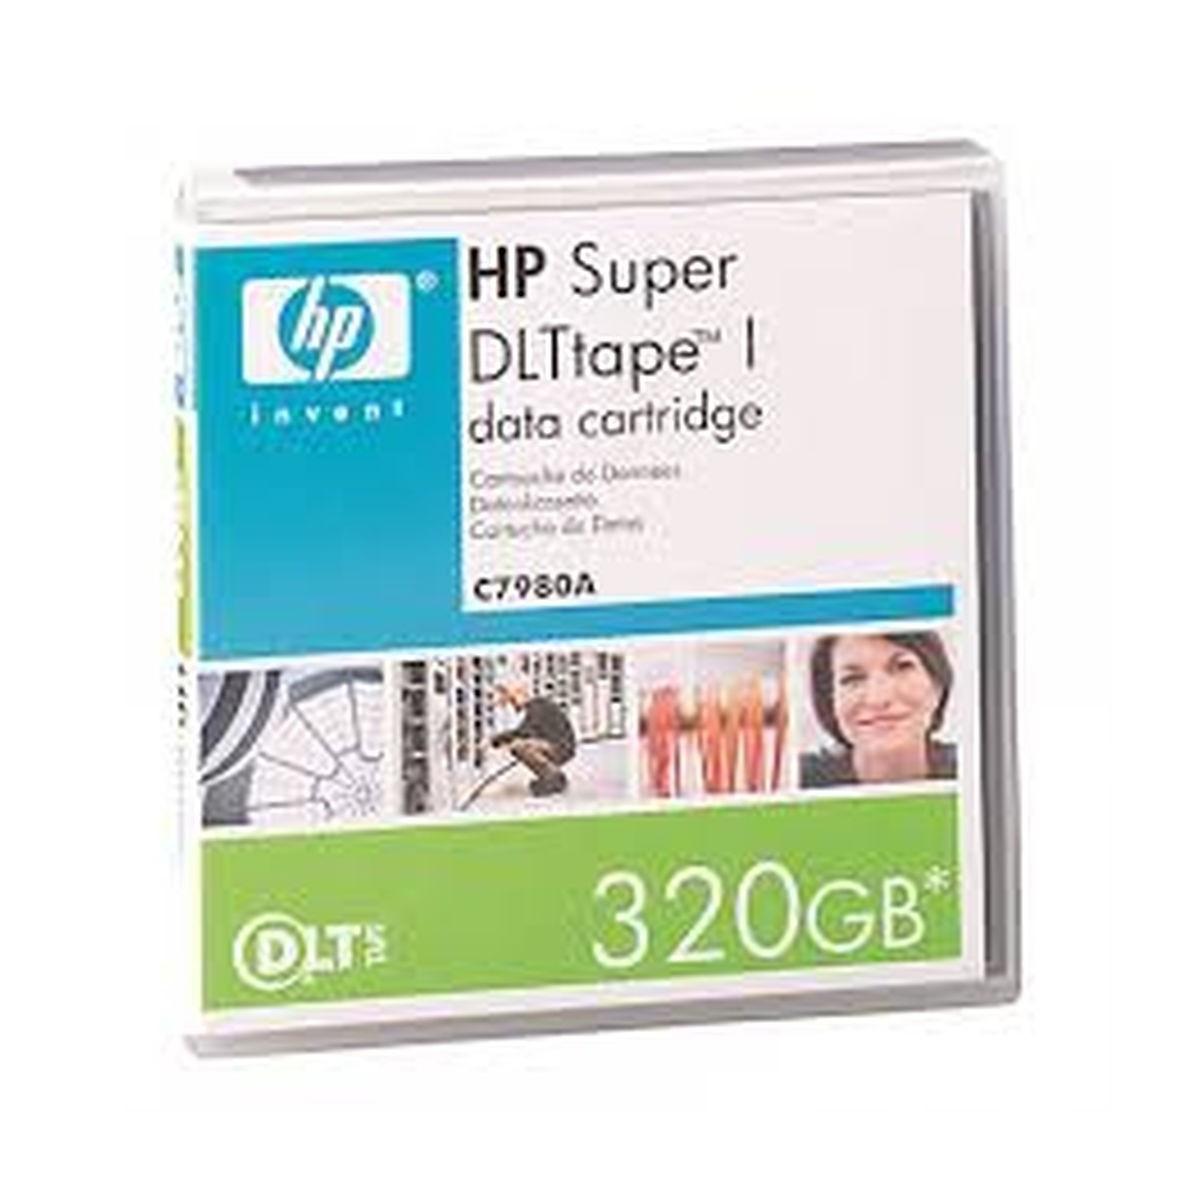 HP SUPER DLTtape I DATA CARTRIDGE 320GB C7980A